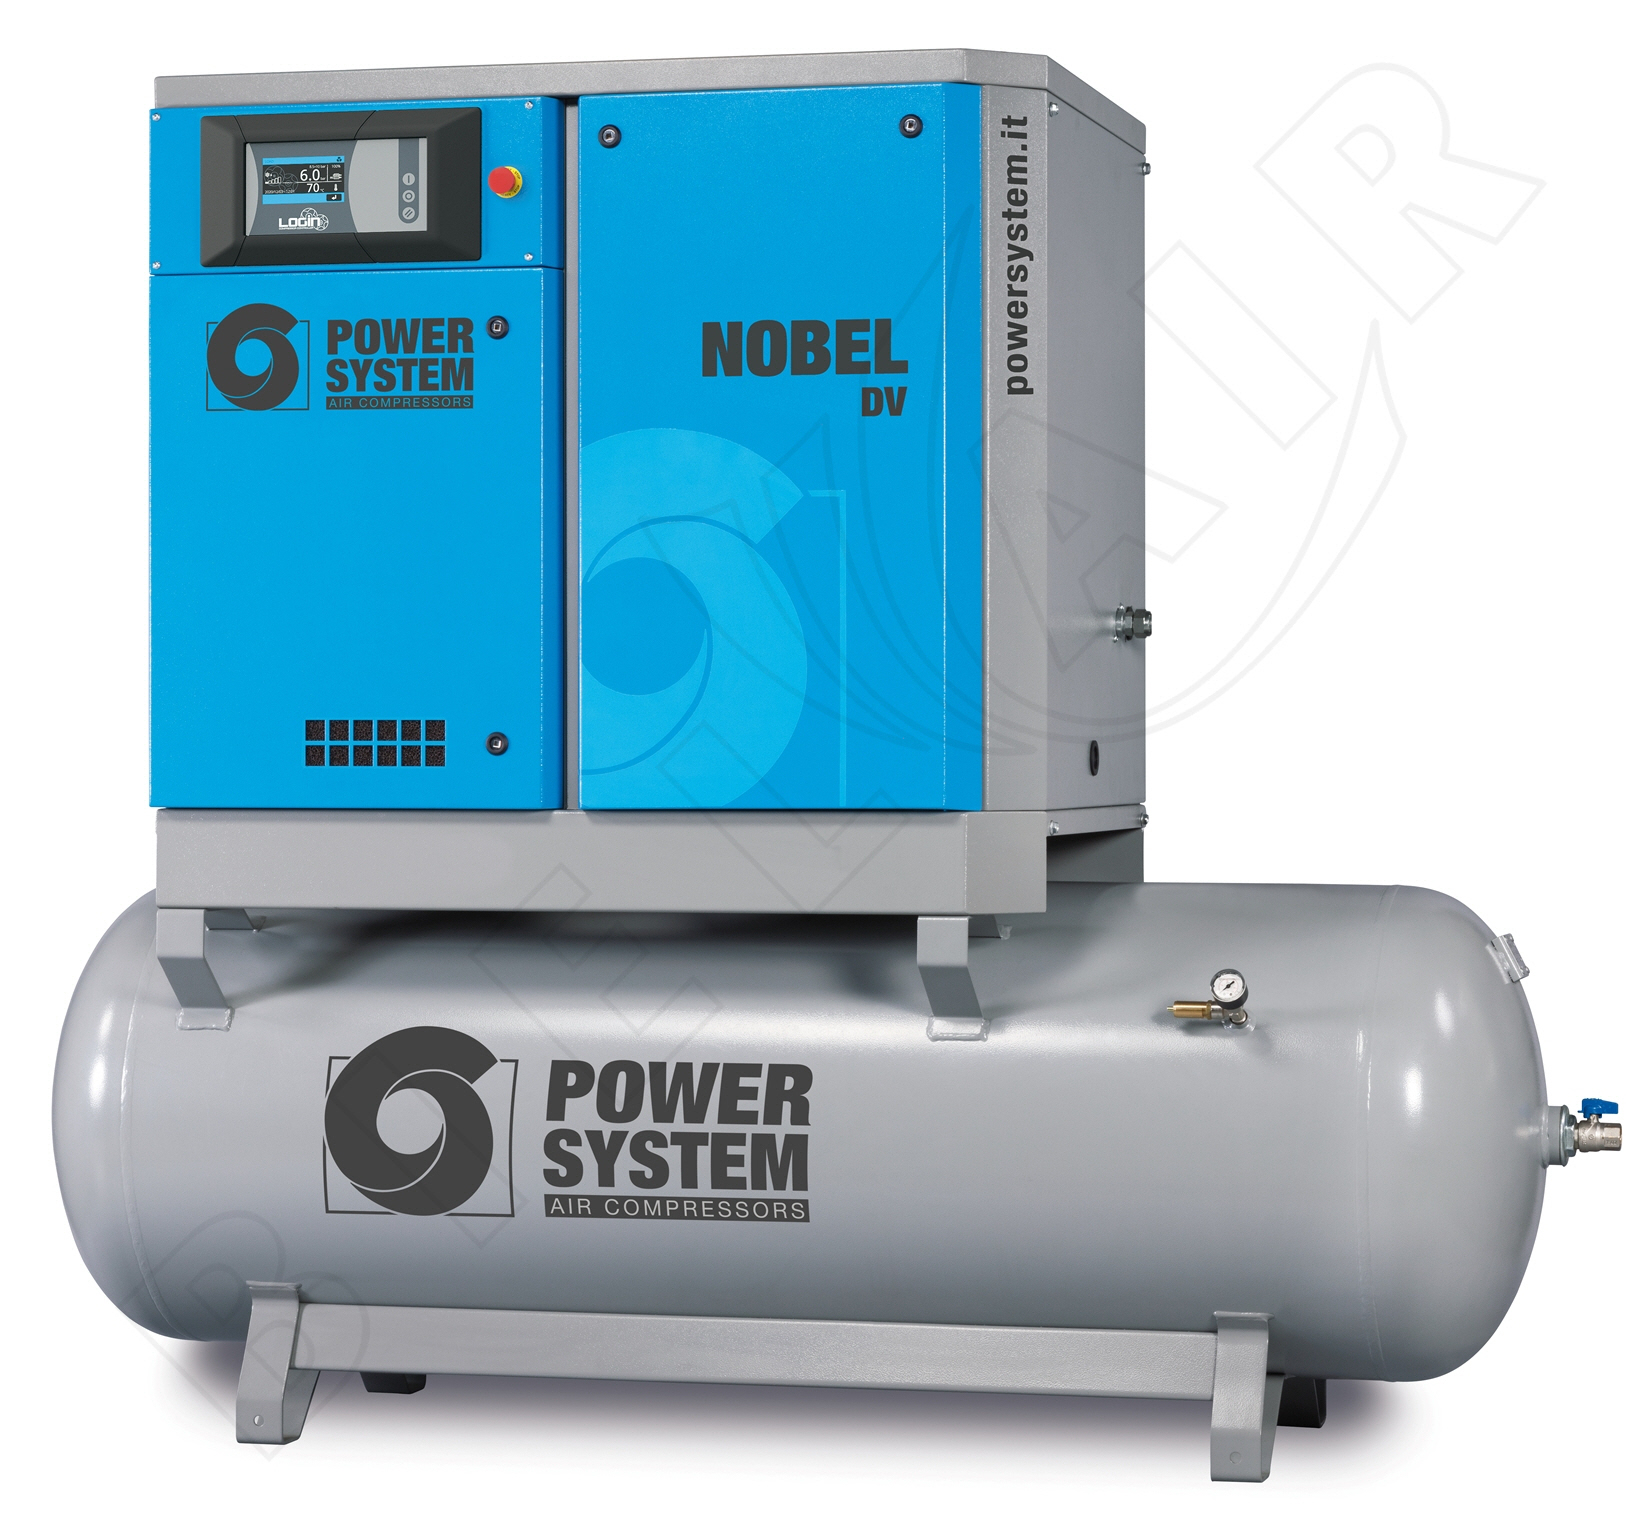 POWERSYSTEM Schraubenkompressor NOBEL 11-08 500 DV (IE3) LOGIN Frequenzgesteuert mit Behälter